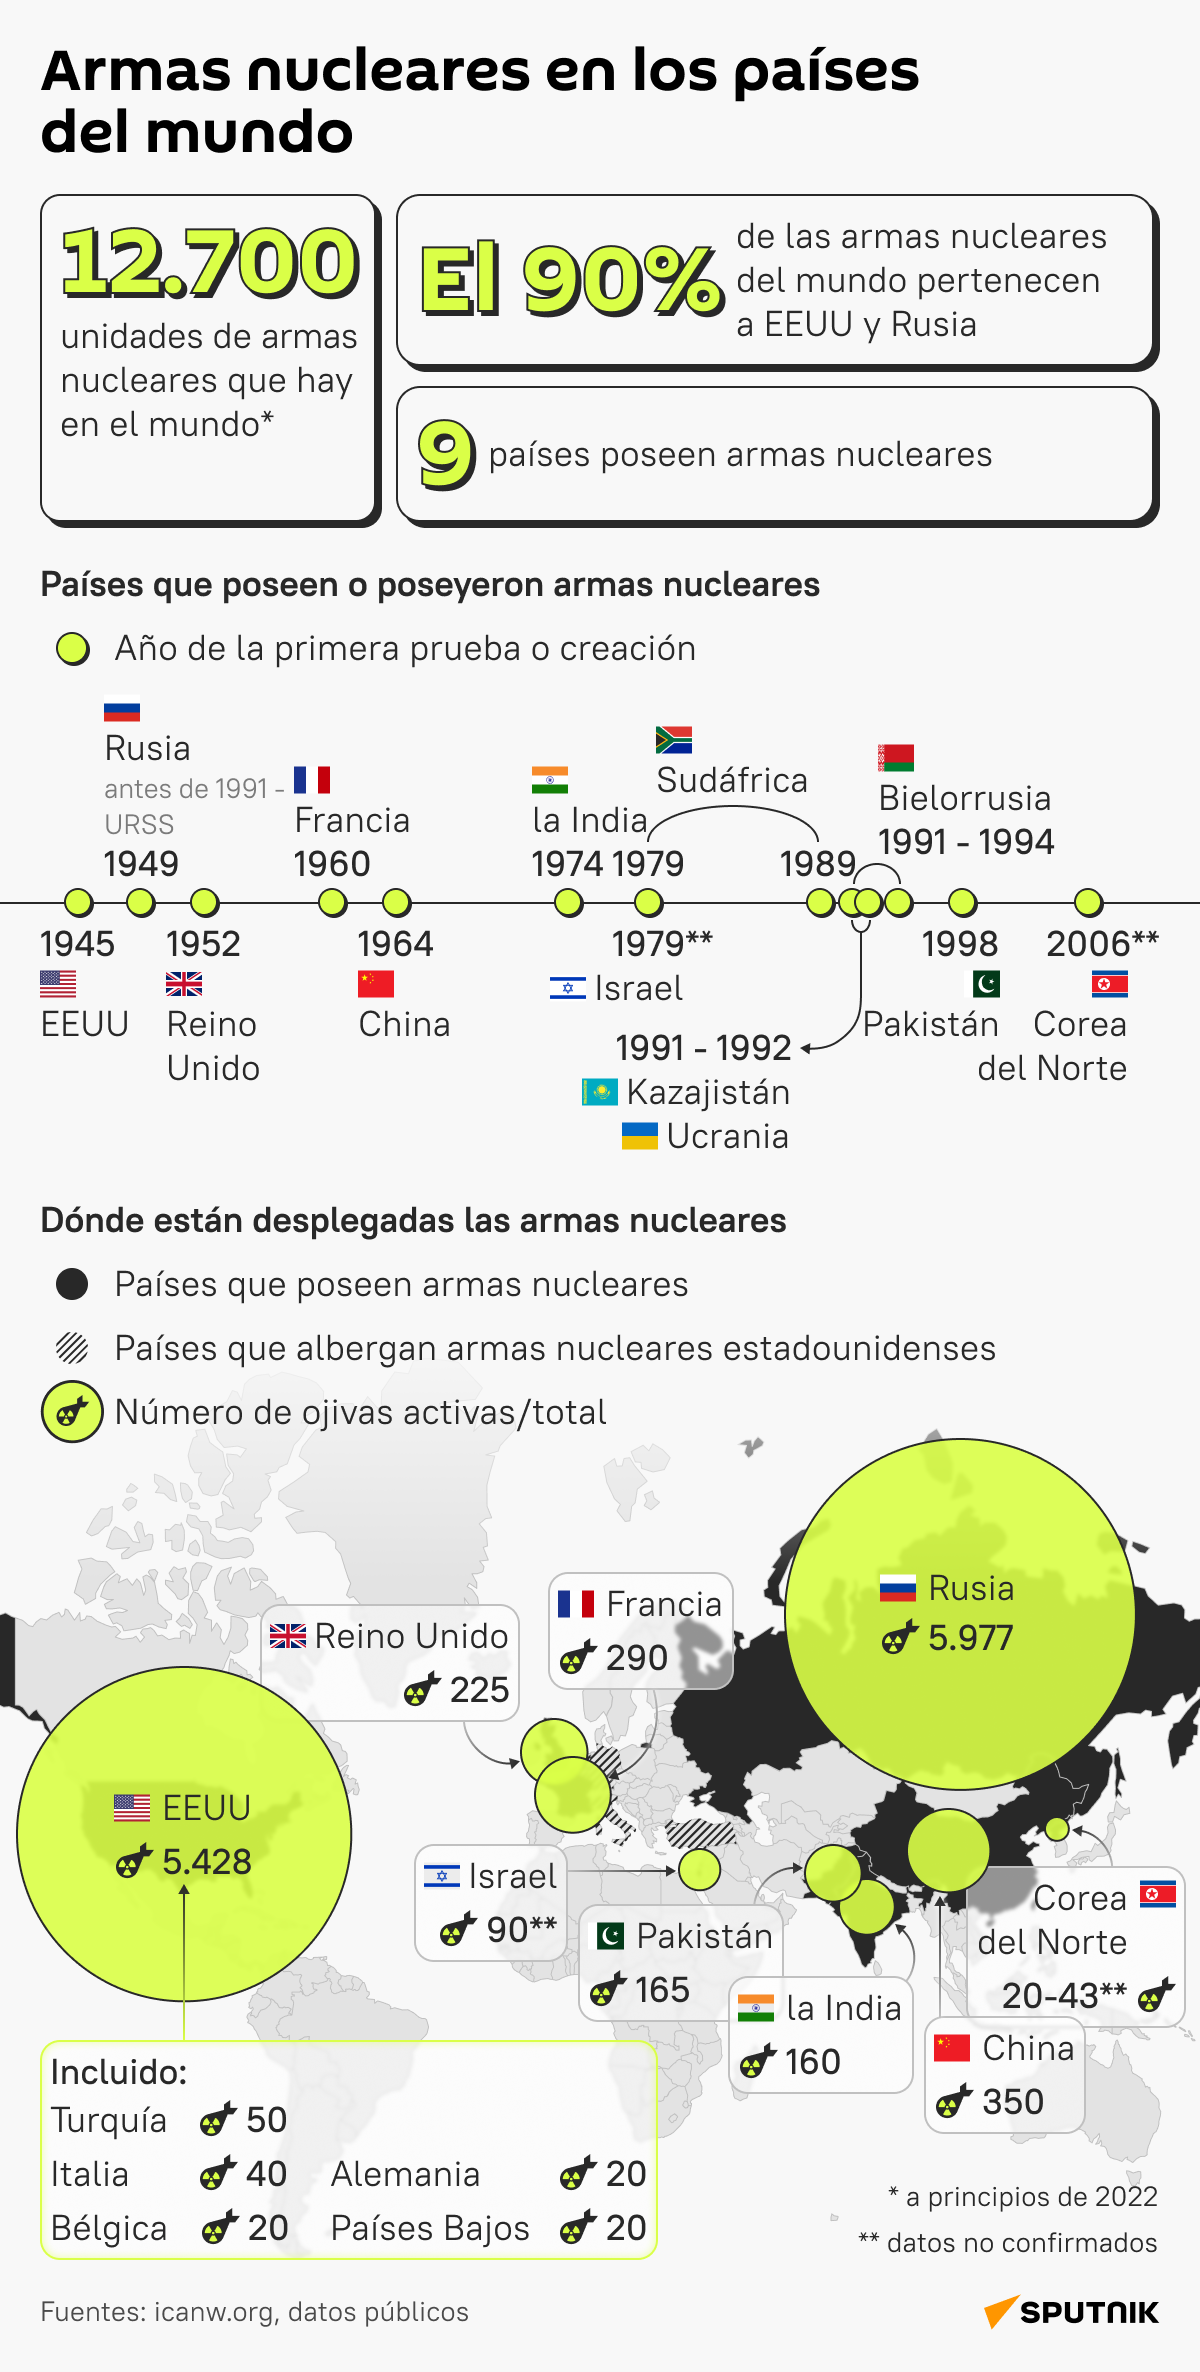 ¿Qué países poseen armas nucleares y cuántas unidades tienen? desk - Sputnik Mundo